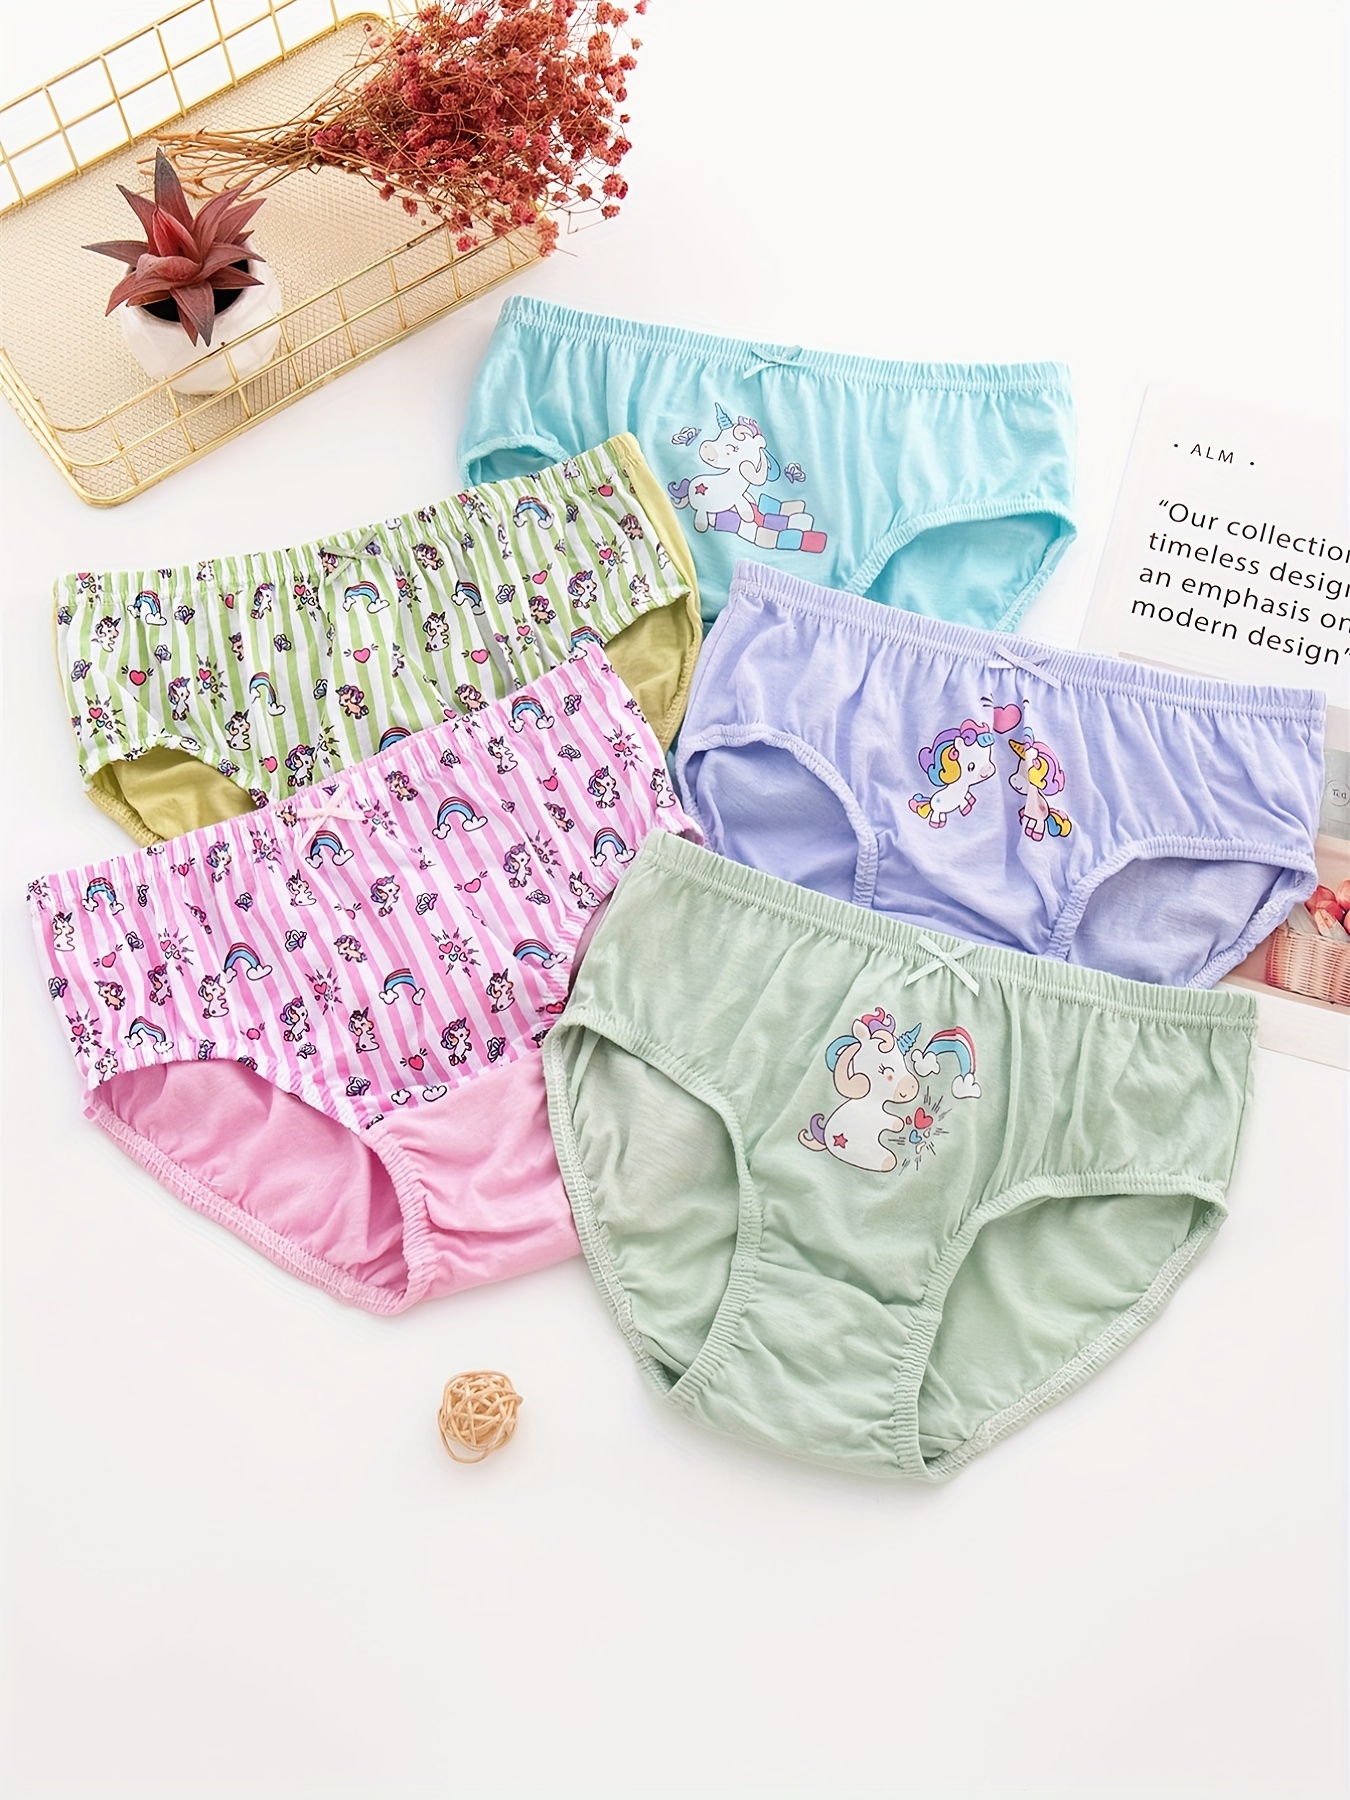 Girl Cute Design Lace Briefs Quality Cotton Soft Kids Underwear Size 3T-10T  Children Underpants 4pcs/Lot Healthy Brief Boxers